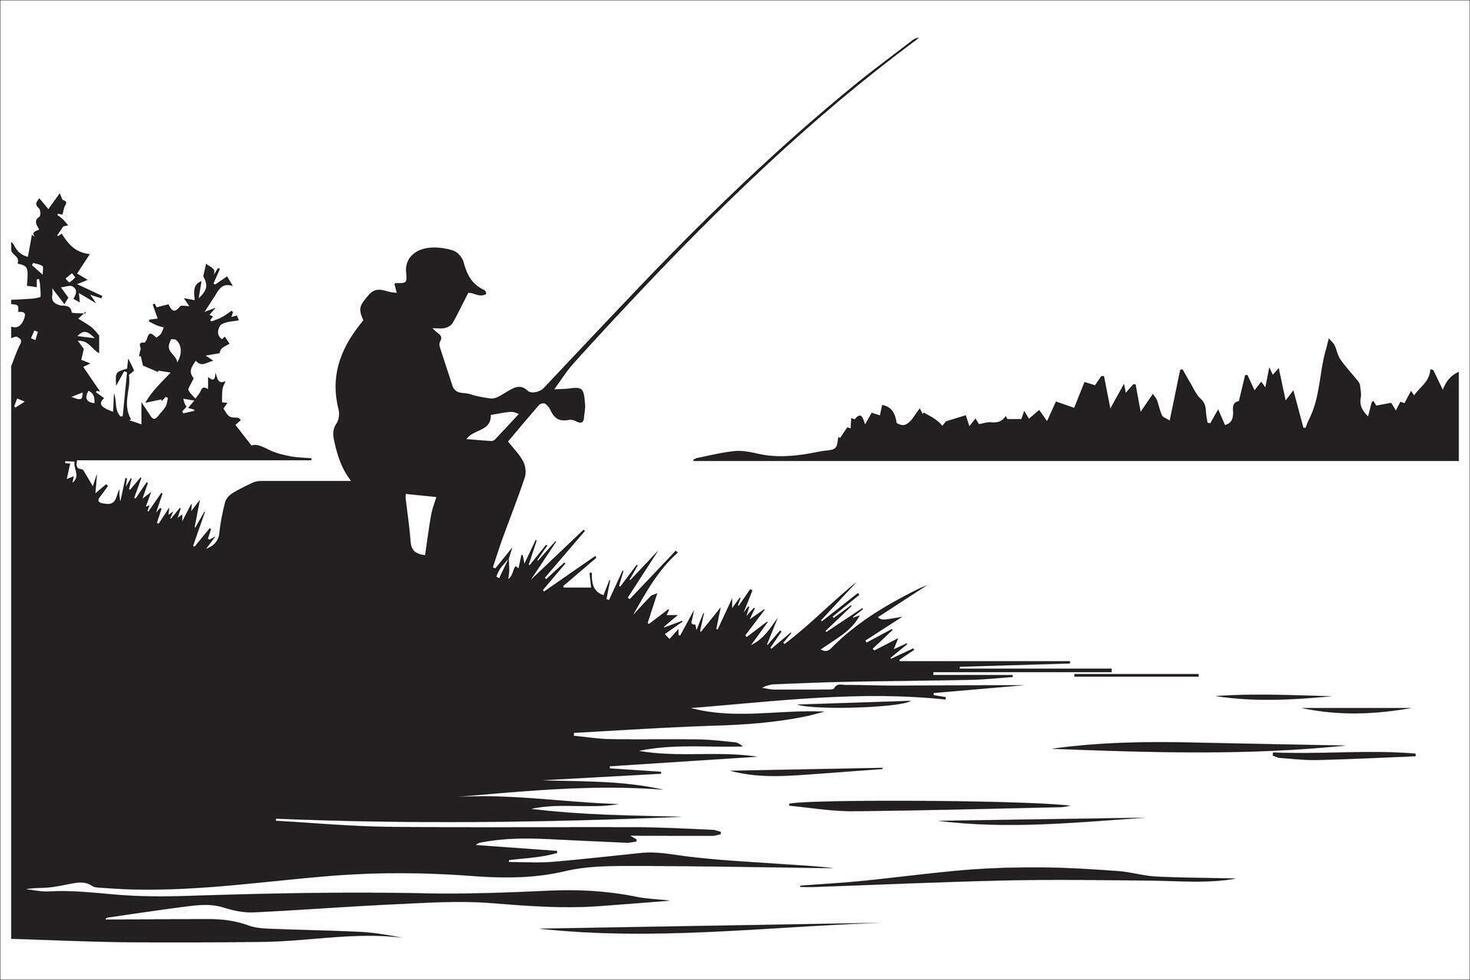 pescador dentro barco silhueta ilustração vetor